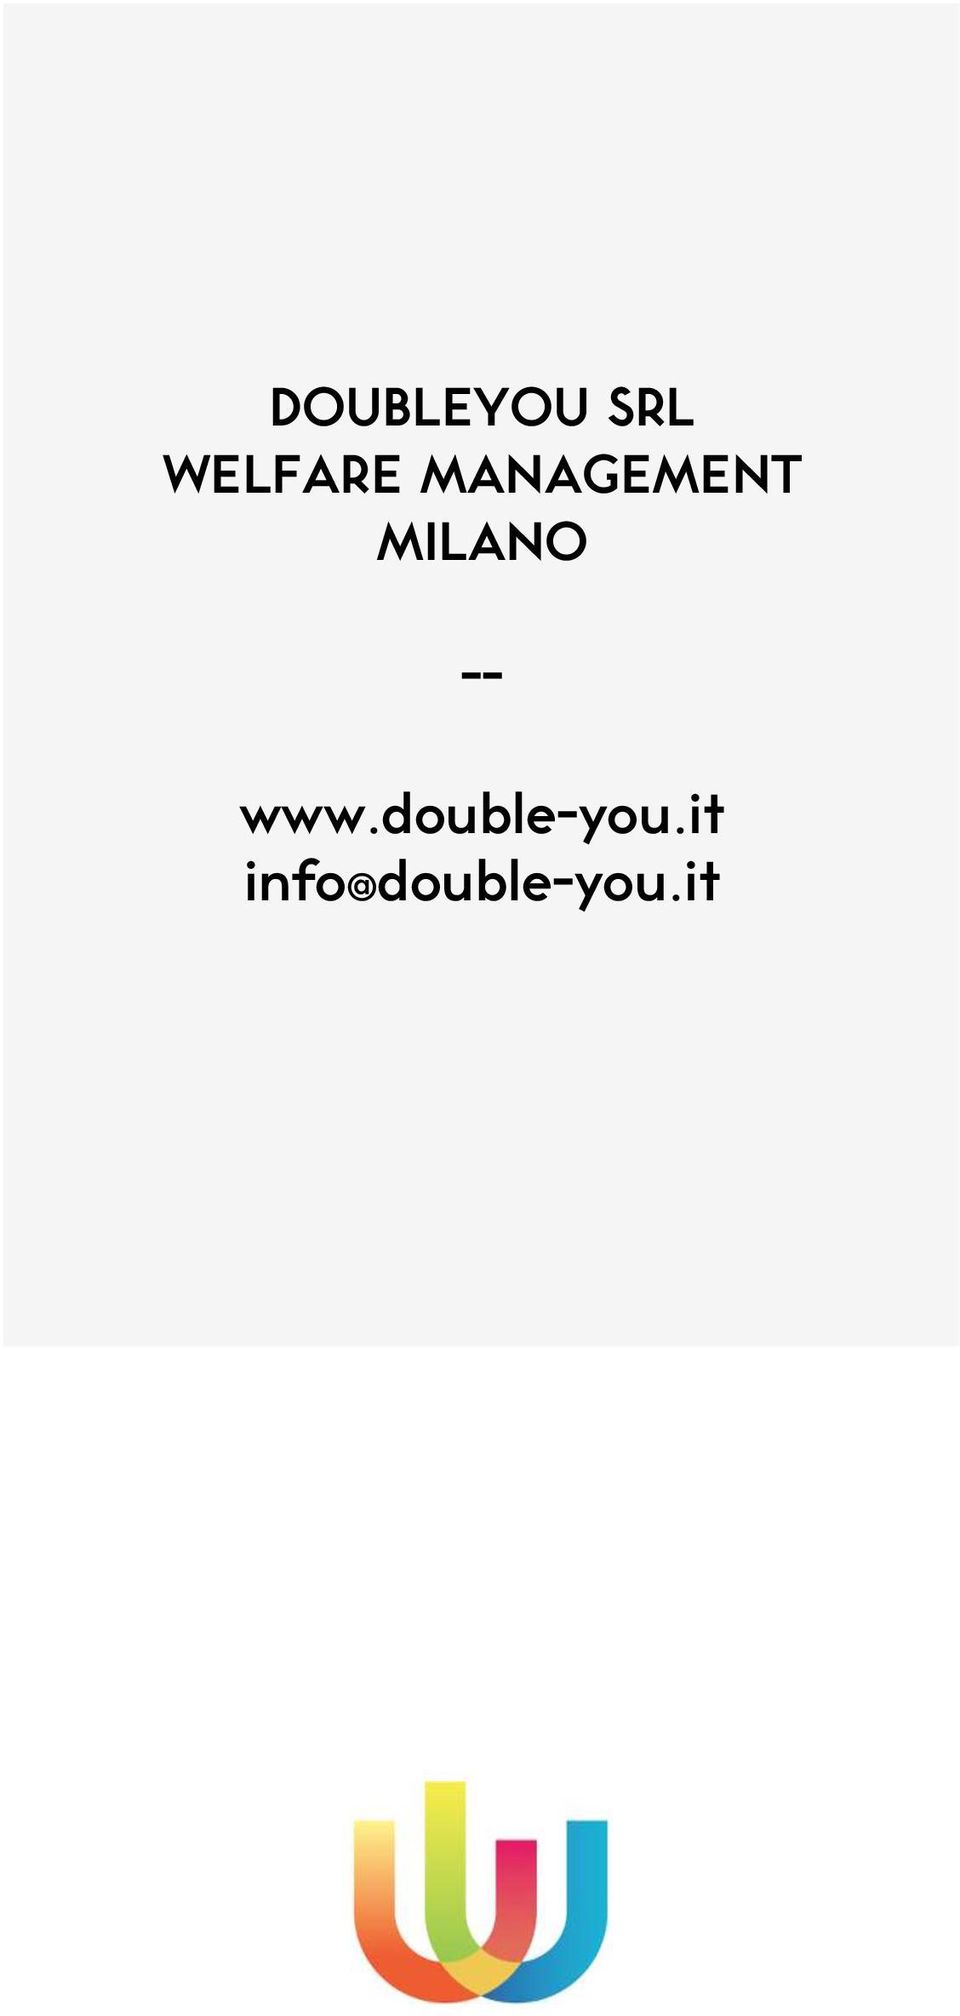 MILANO -- www.